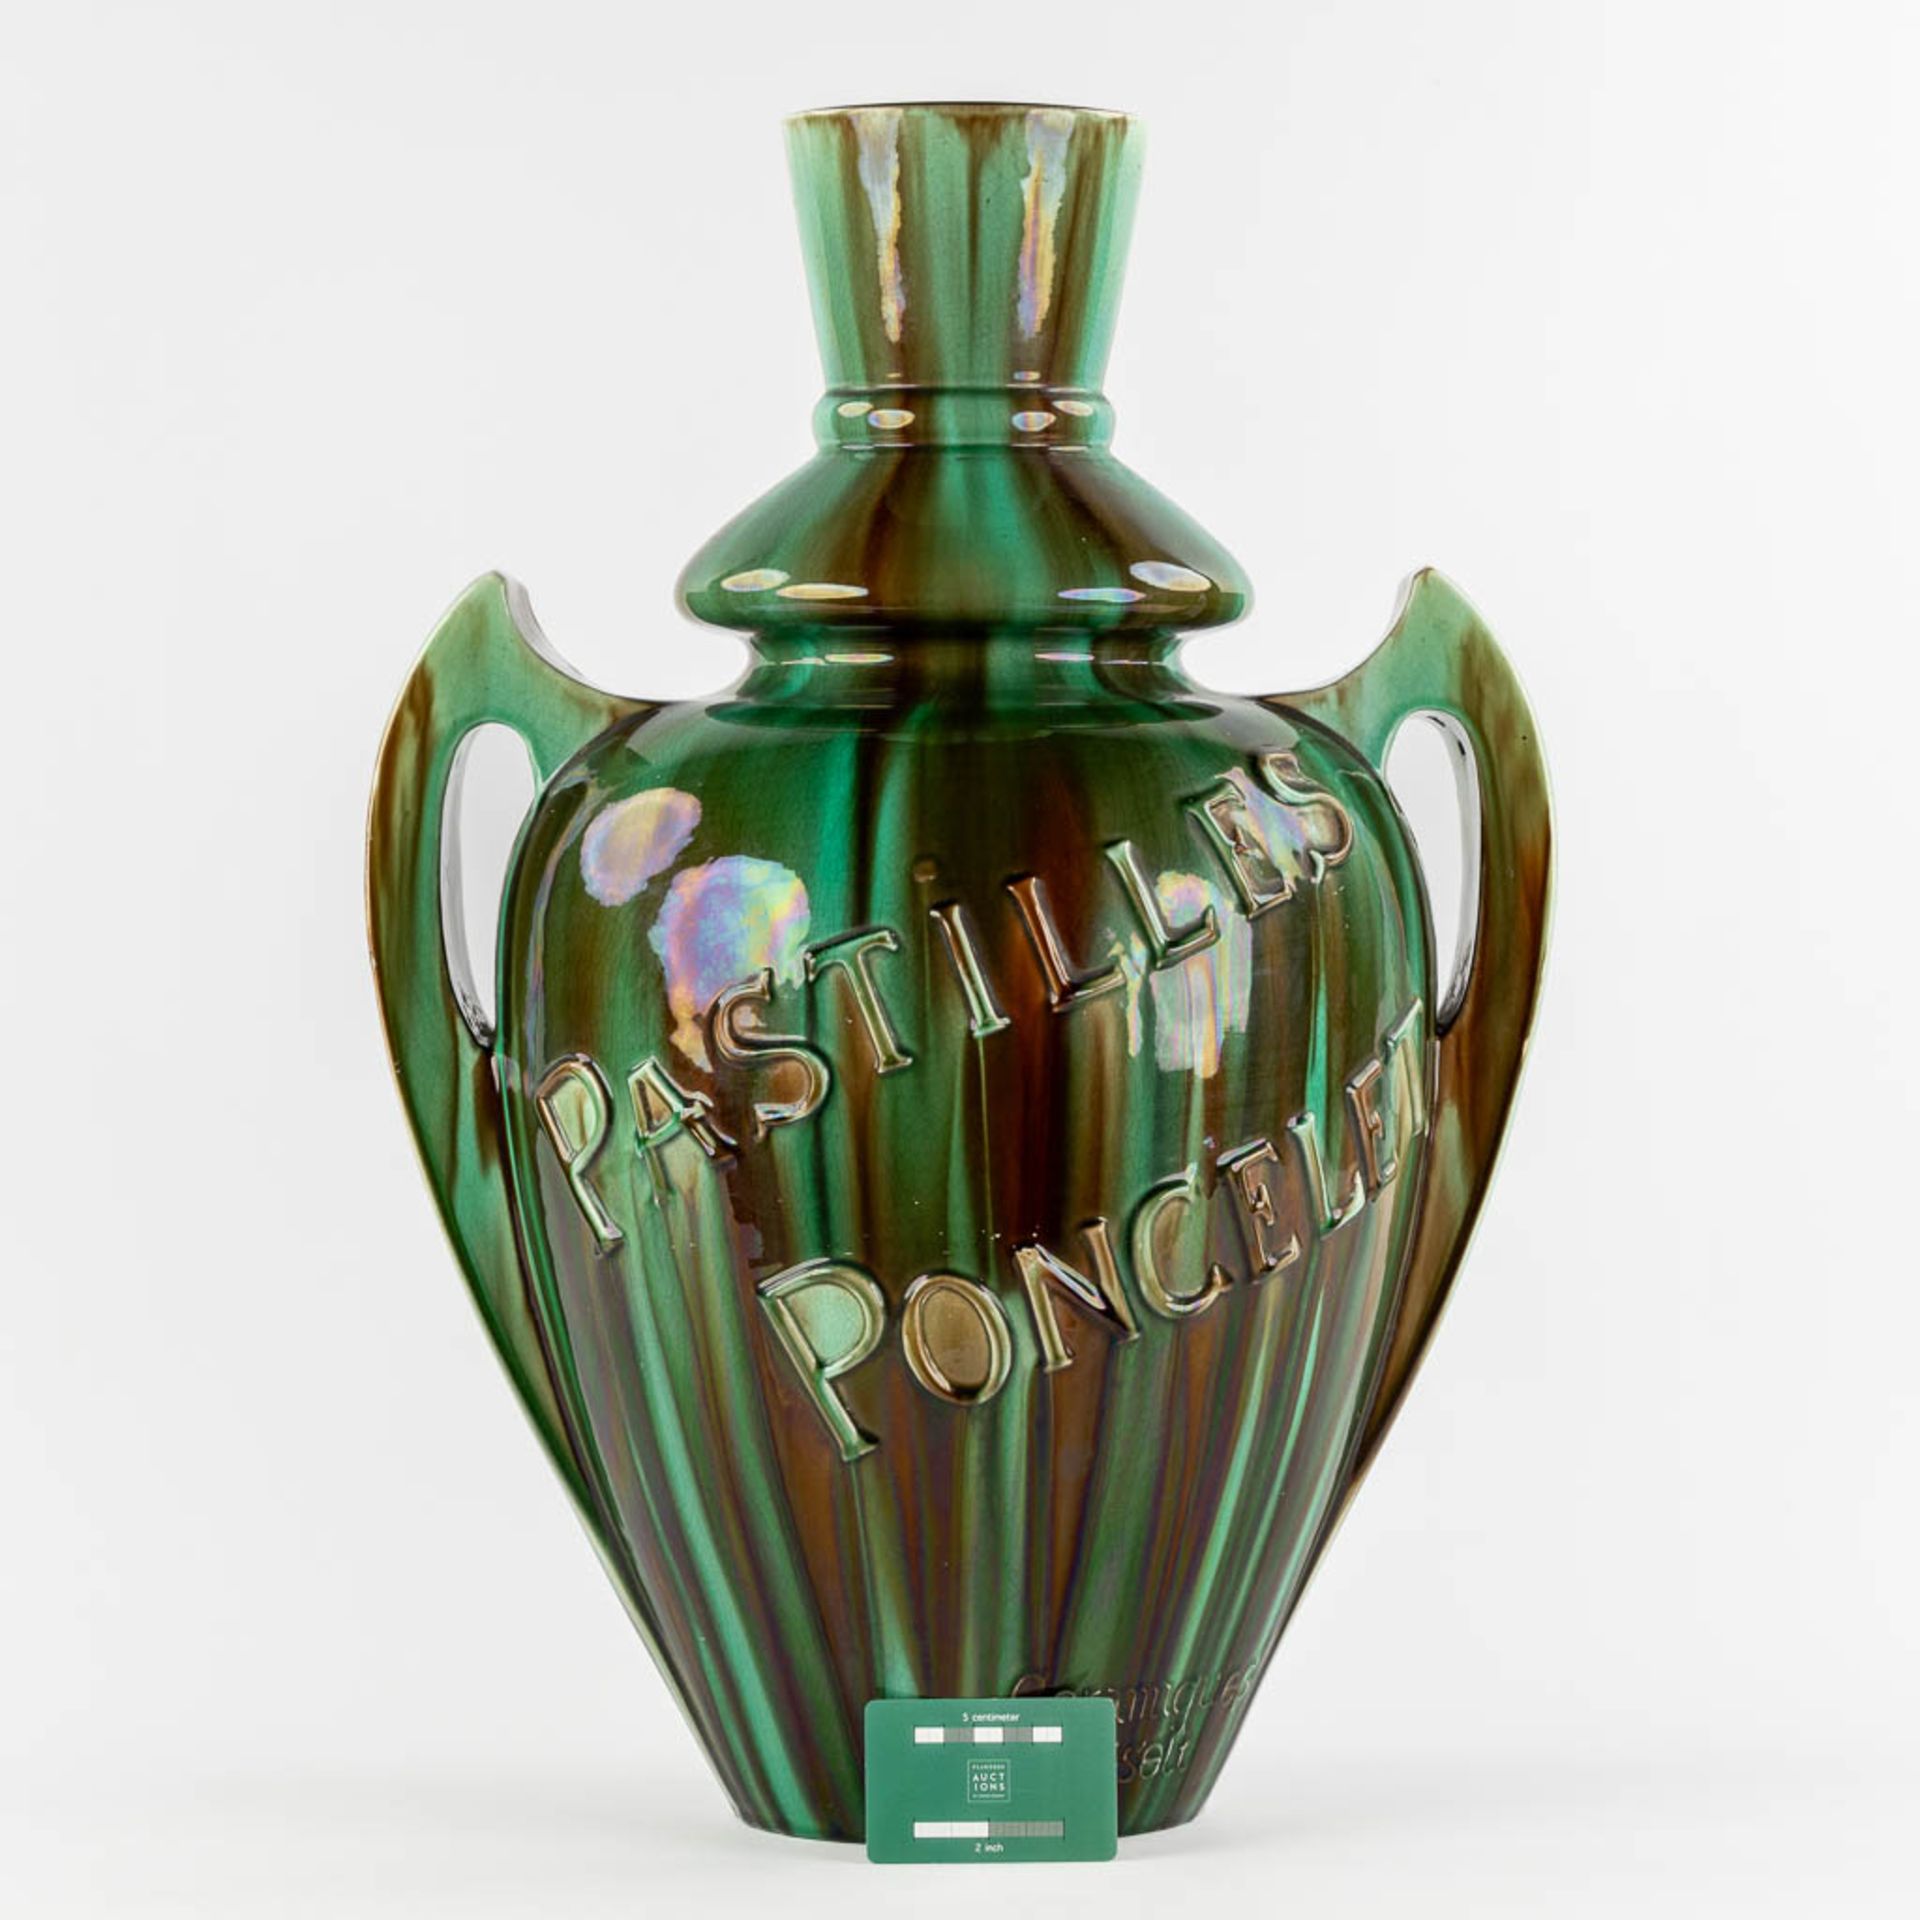 Ceramics of Hasselt, 'Pastilles Poncelet' a large faience vase. (L:34 x W:42 x H:60 cm) - Image 2 of 13